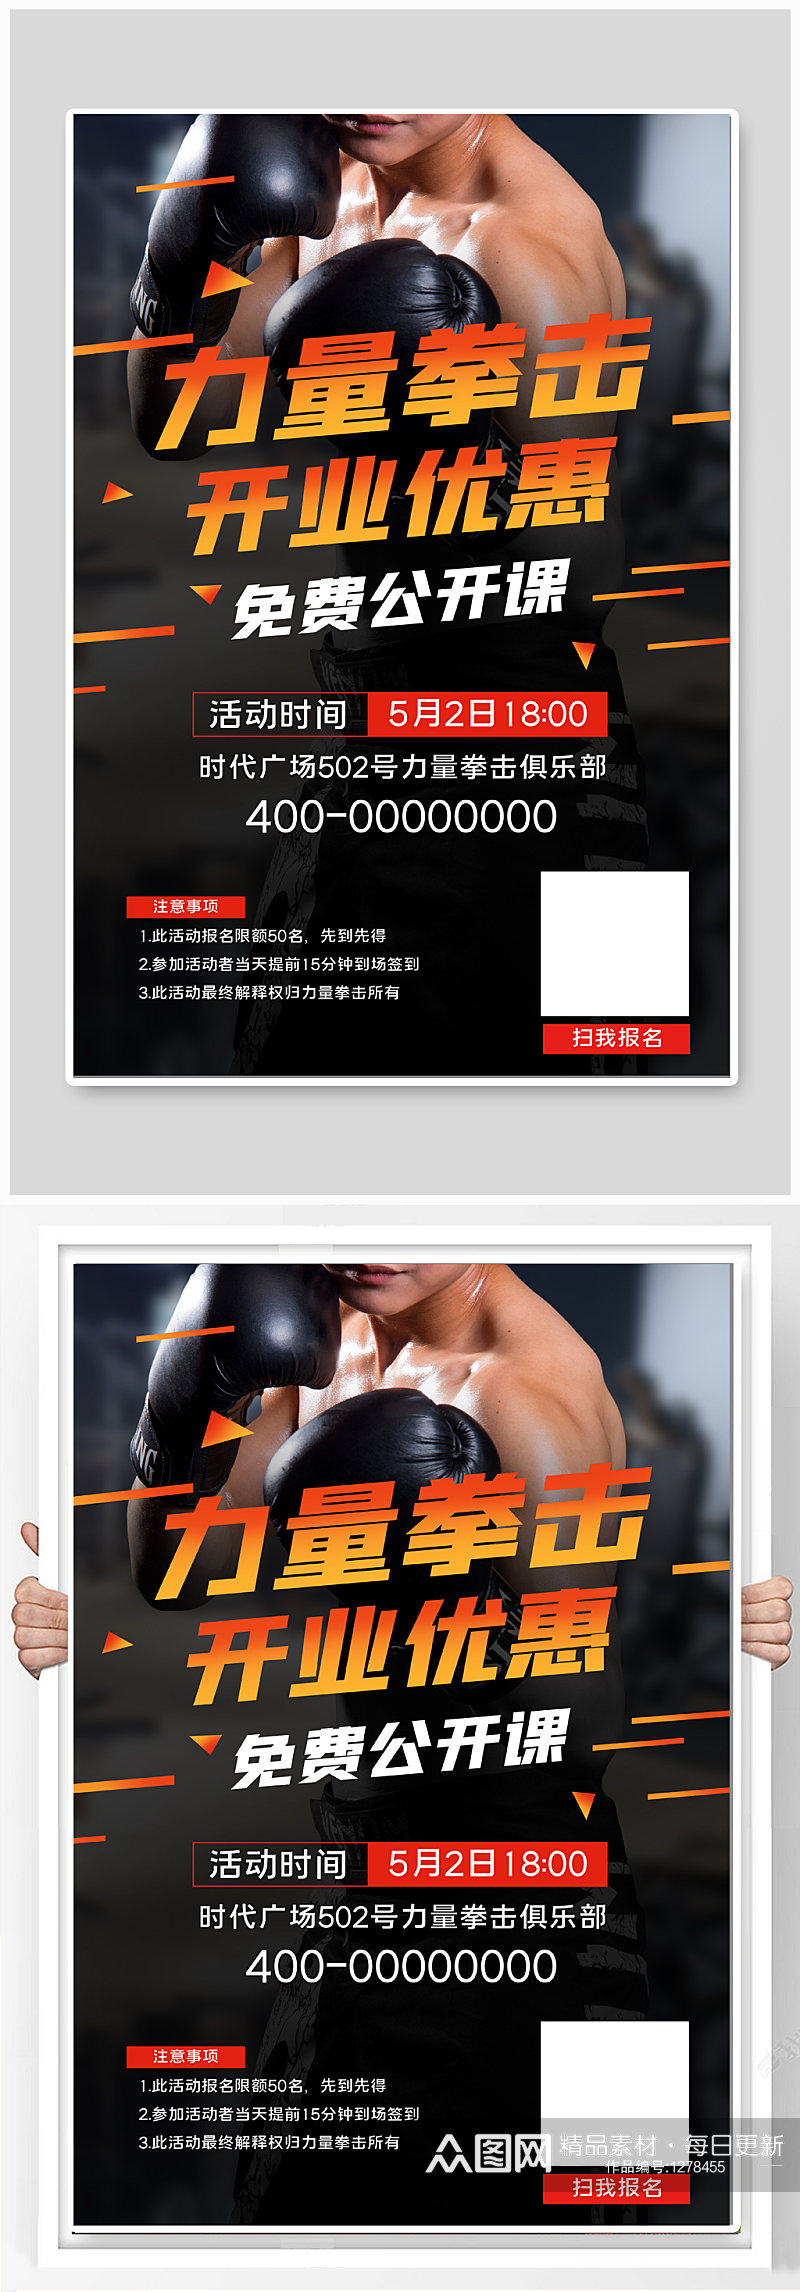 力量拳击健身房开业优惠宣传海报素材